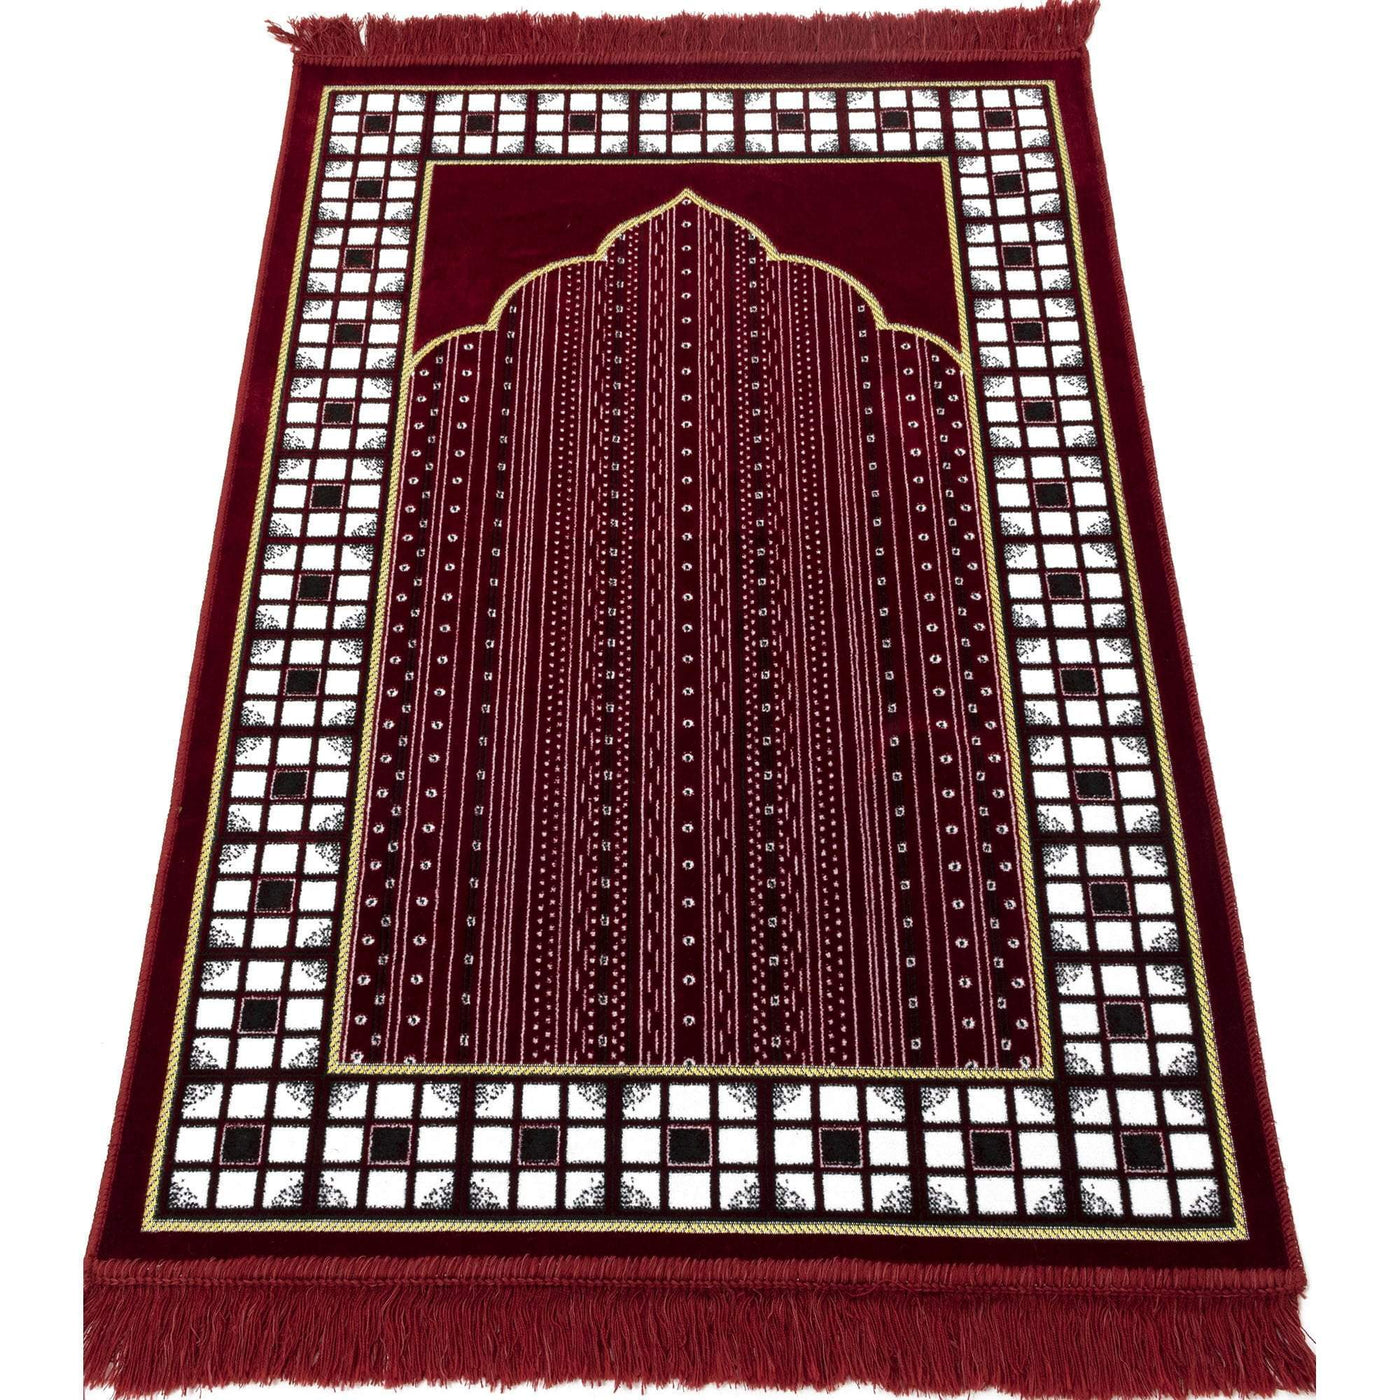 Modefa Prayer Rug Red Velvet Vined Arch Islamic Prayer Rug - Red